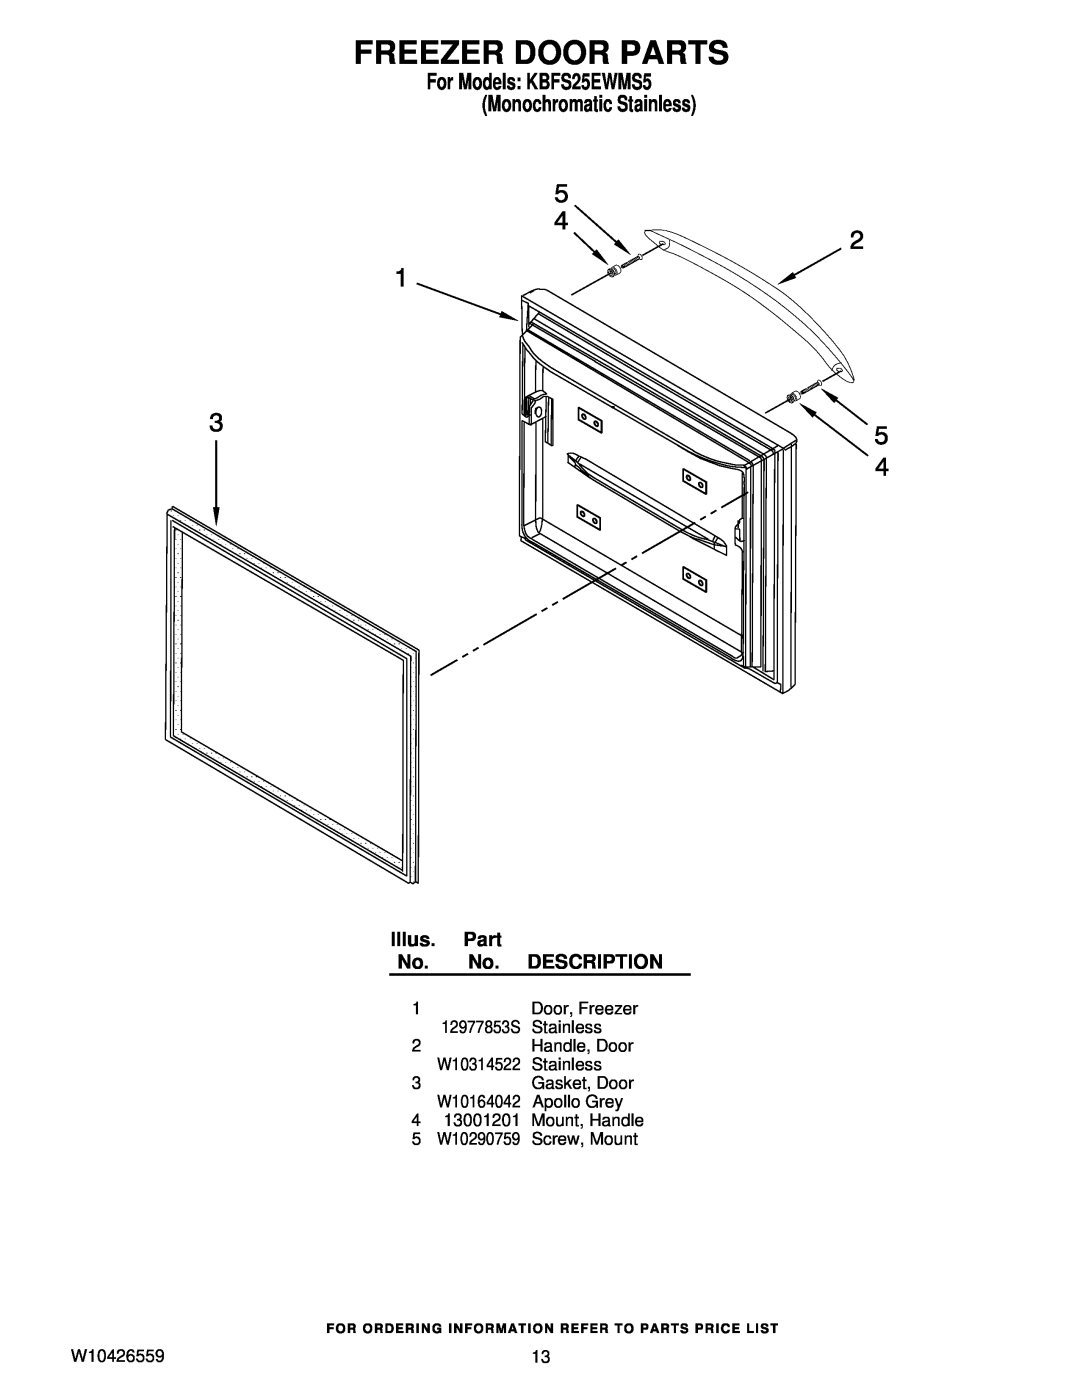 KitchenAid Freezer Door Parts, Illus, Description, For Models KBFS25EWMS5 Monochromatic Stainless, 12977853S, W10314522 